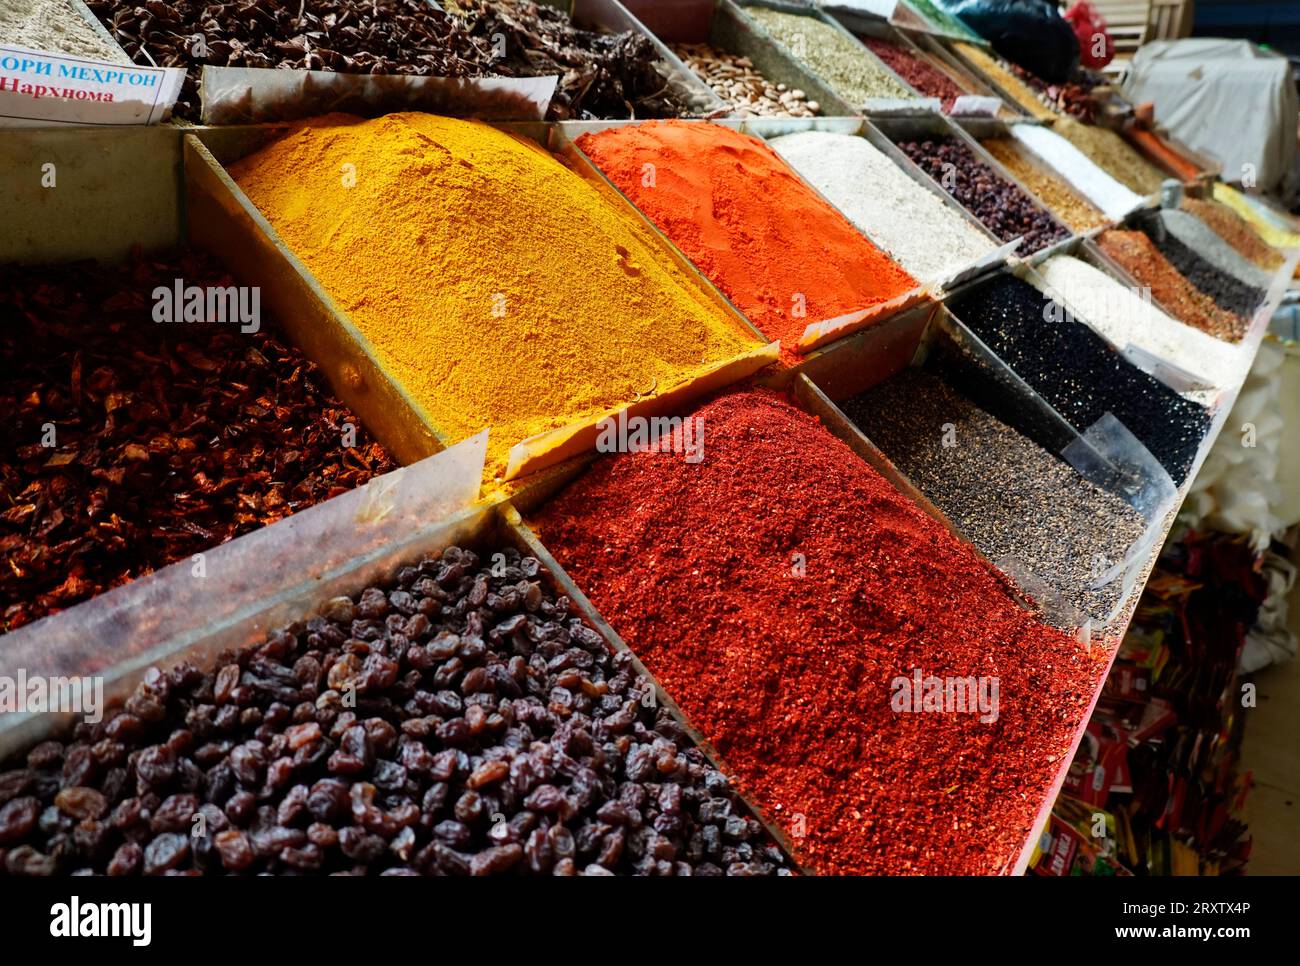 Épices à vendre, marché central, Douchanbé, Tadjikistan, Asie centrale, Asie Banque D'Images